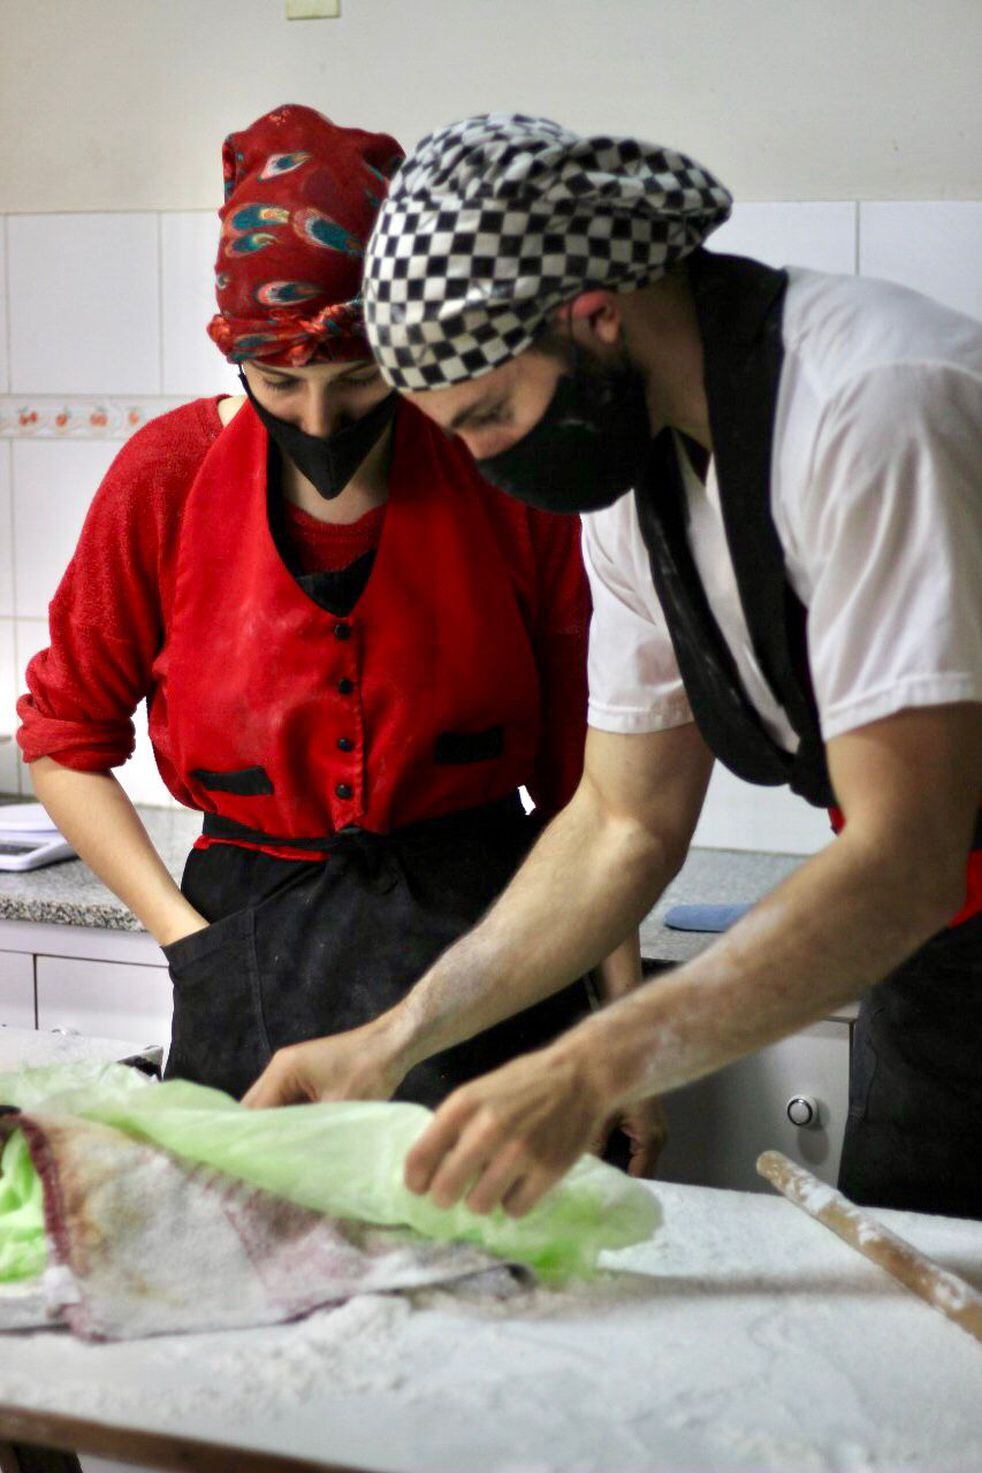 ¡En acción! Haneen y Besim preparando las delicias de su emprendimiento  gastronómico "Arabian".